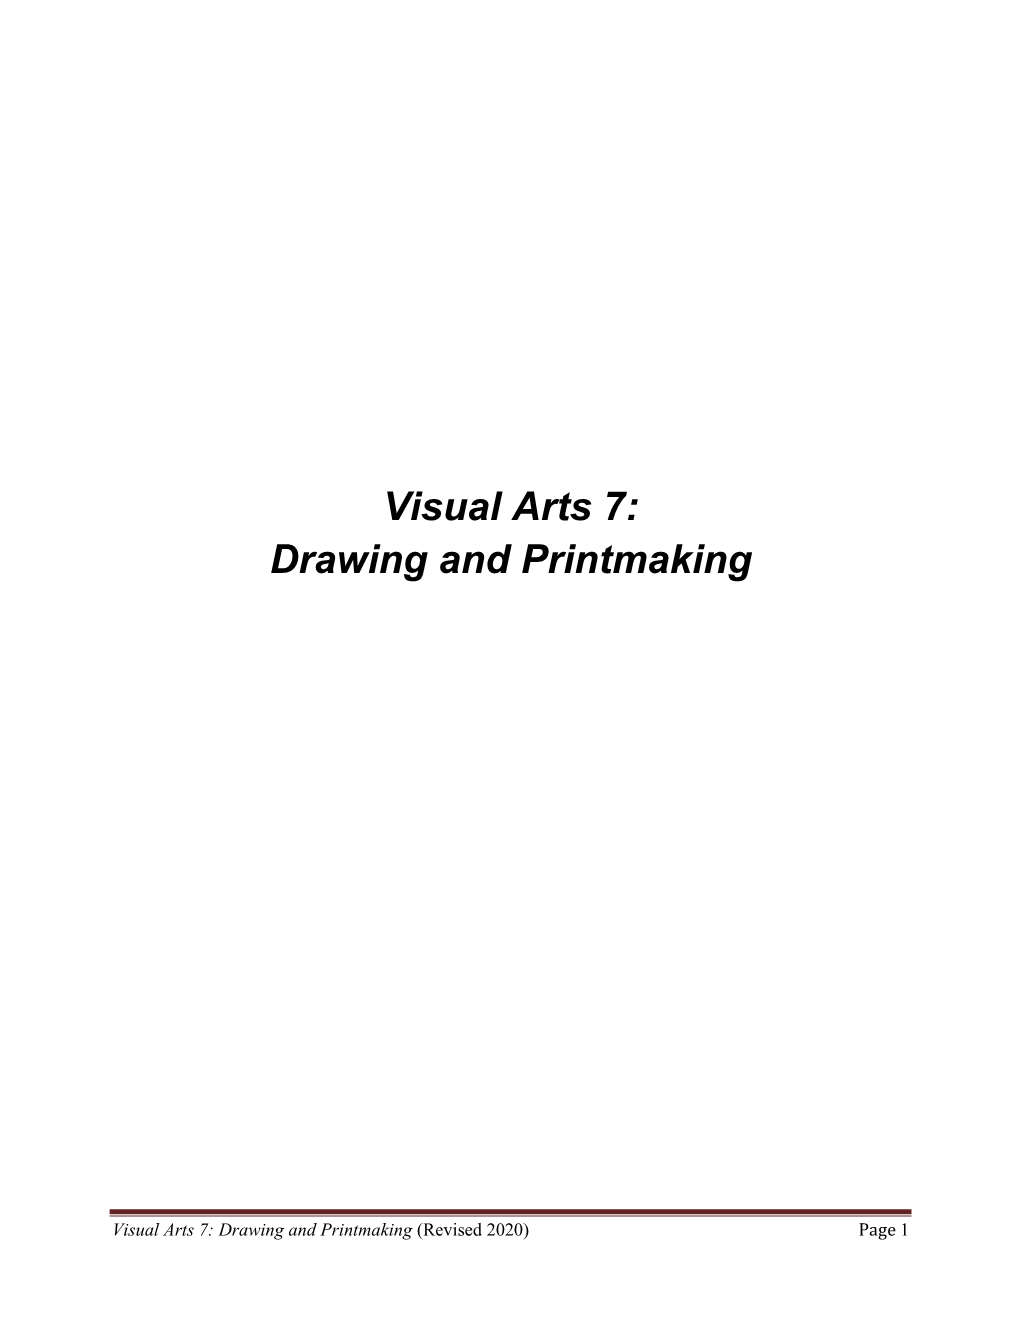 Visual Arts 7: Drawing and Printmaking